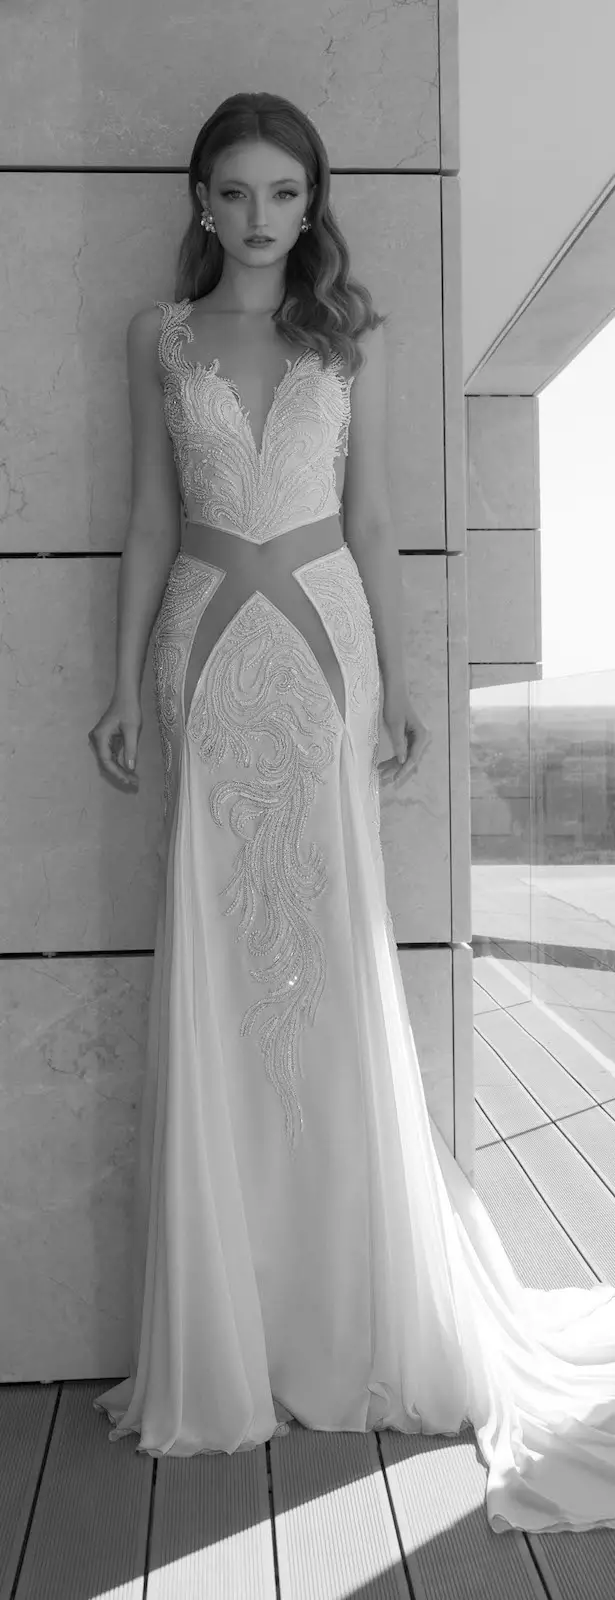 Dany Mizrachi 2016 Wedding Dress